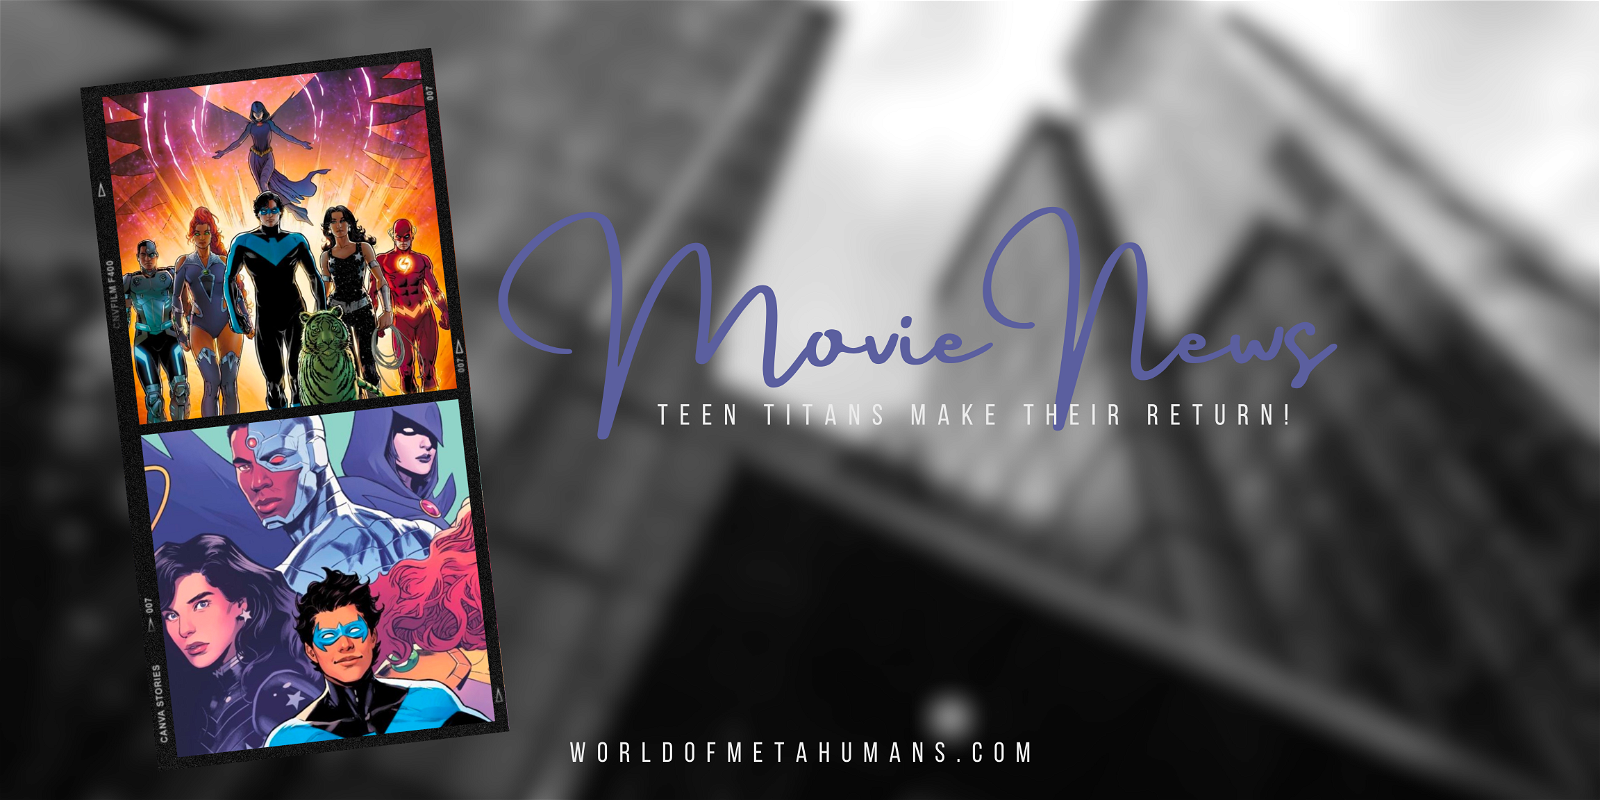 Movie News: Teen Titans Make Their Return!